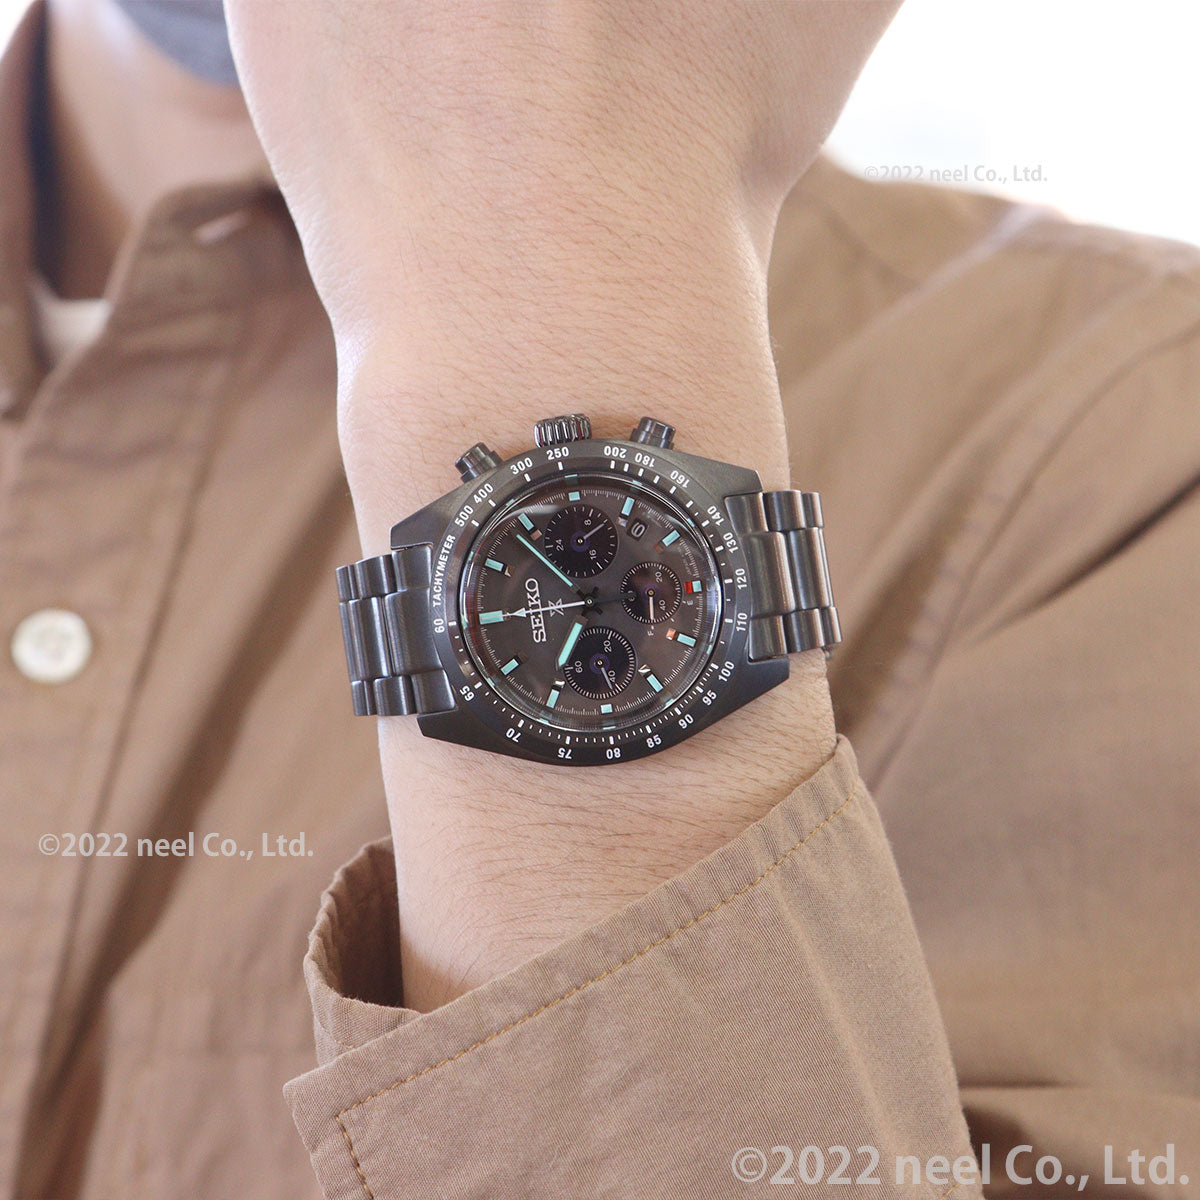 セイコー プロスペックス SBDL103 スピードタイマー ソーラー クロノグラフ メンズ 腕時計 オールブラック 日本製 SEIKO PROSPEX  SPEEDTIMER